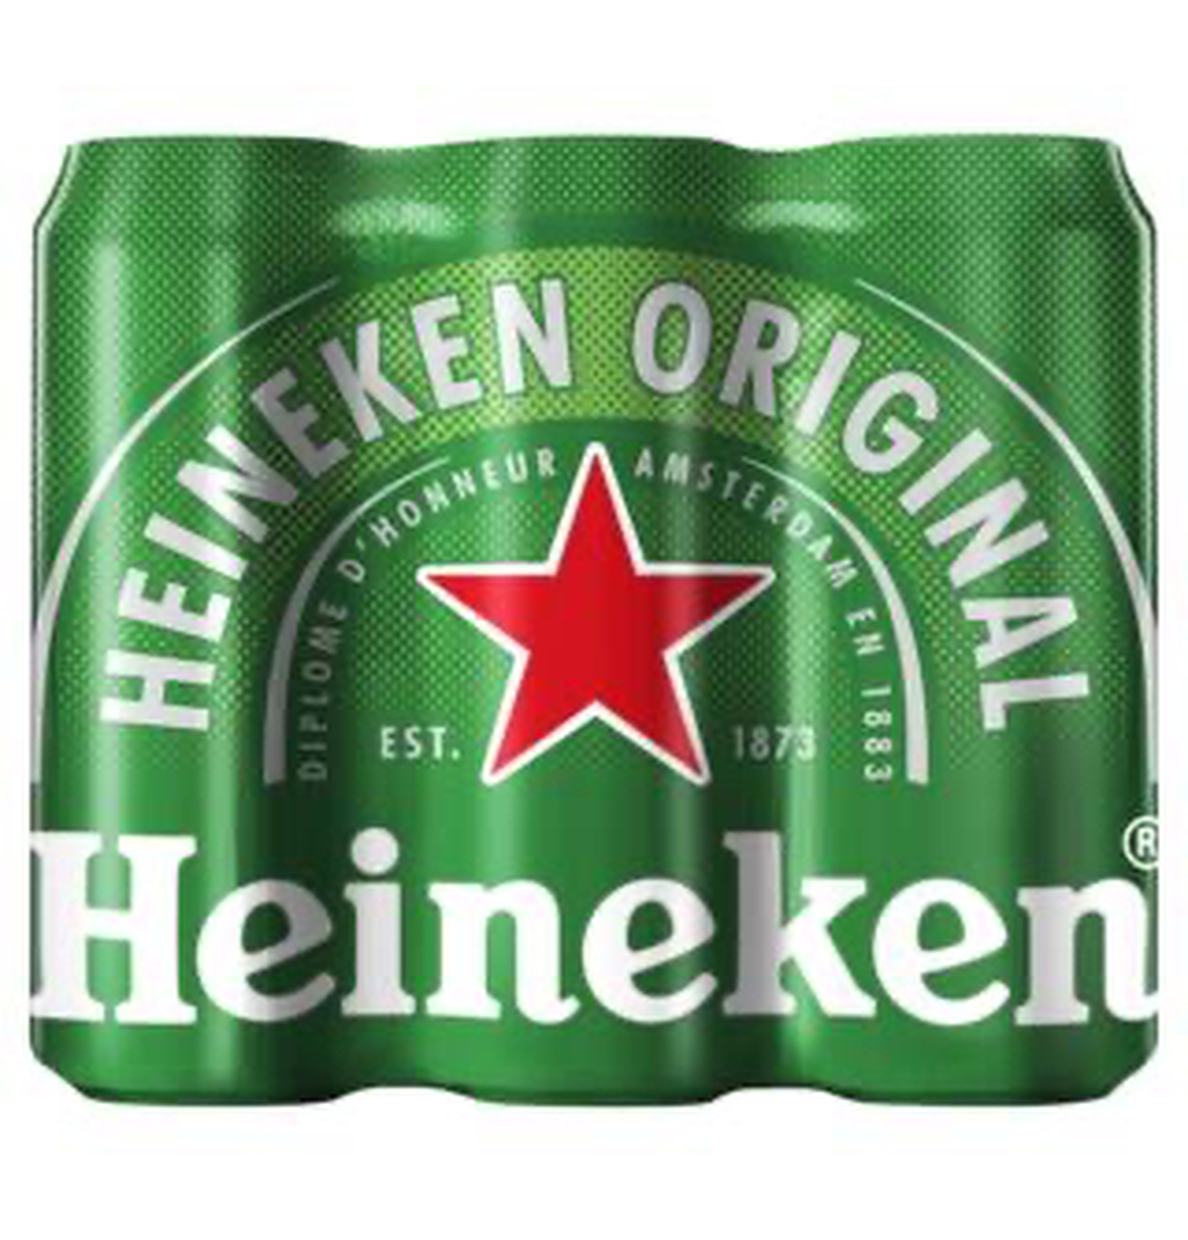 Bier 6 Pack Heineken (6x0,5L) Gekoeld